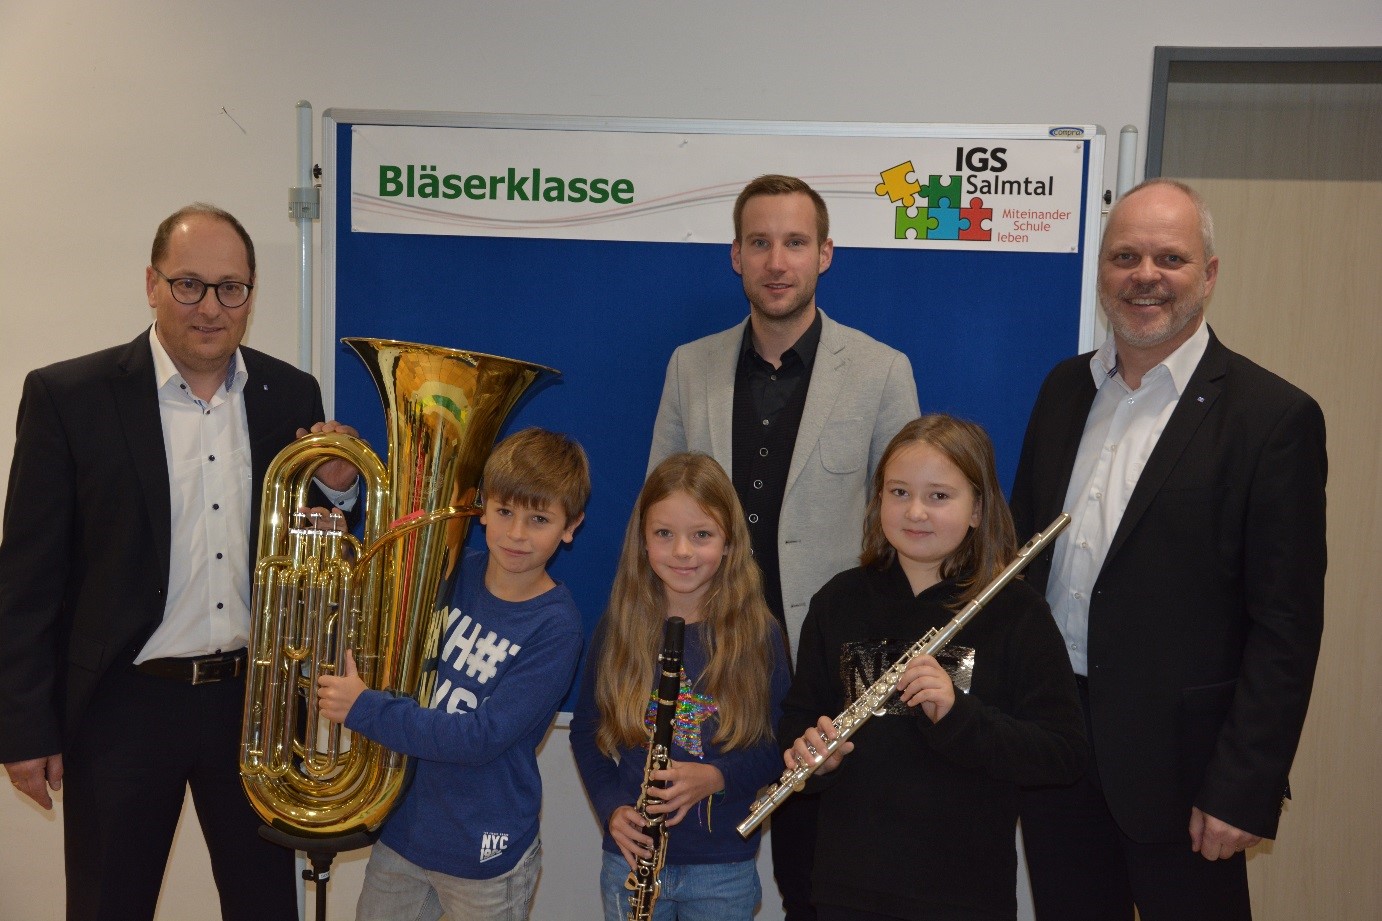 Neben der Crowdfunding-Aktion spendete die VR-Stiftung drei Instrumente (v.l.n.r. Tuba, Klarinette, Querflö-te) im Gesamtwert von 4.500 €. Herr Born, Leiter der Bläserklasse (Mitte), freut sich, dass Herr Michael Hoeck (links) und Gerhard Knauf (rechts),